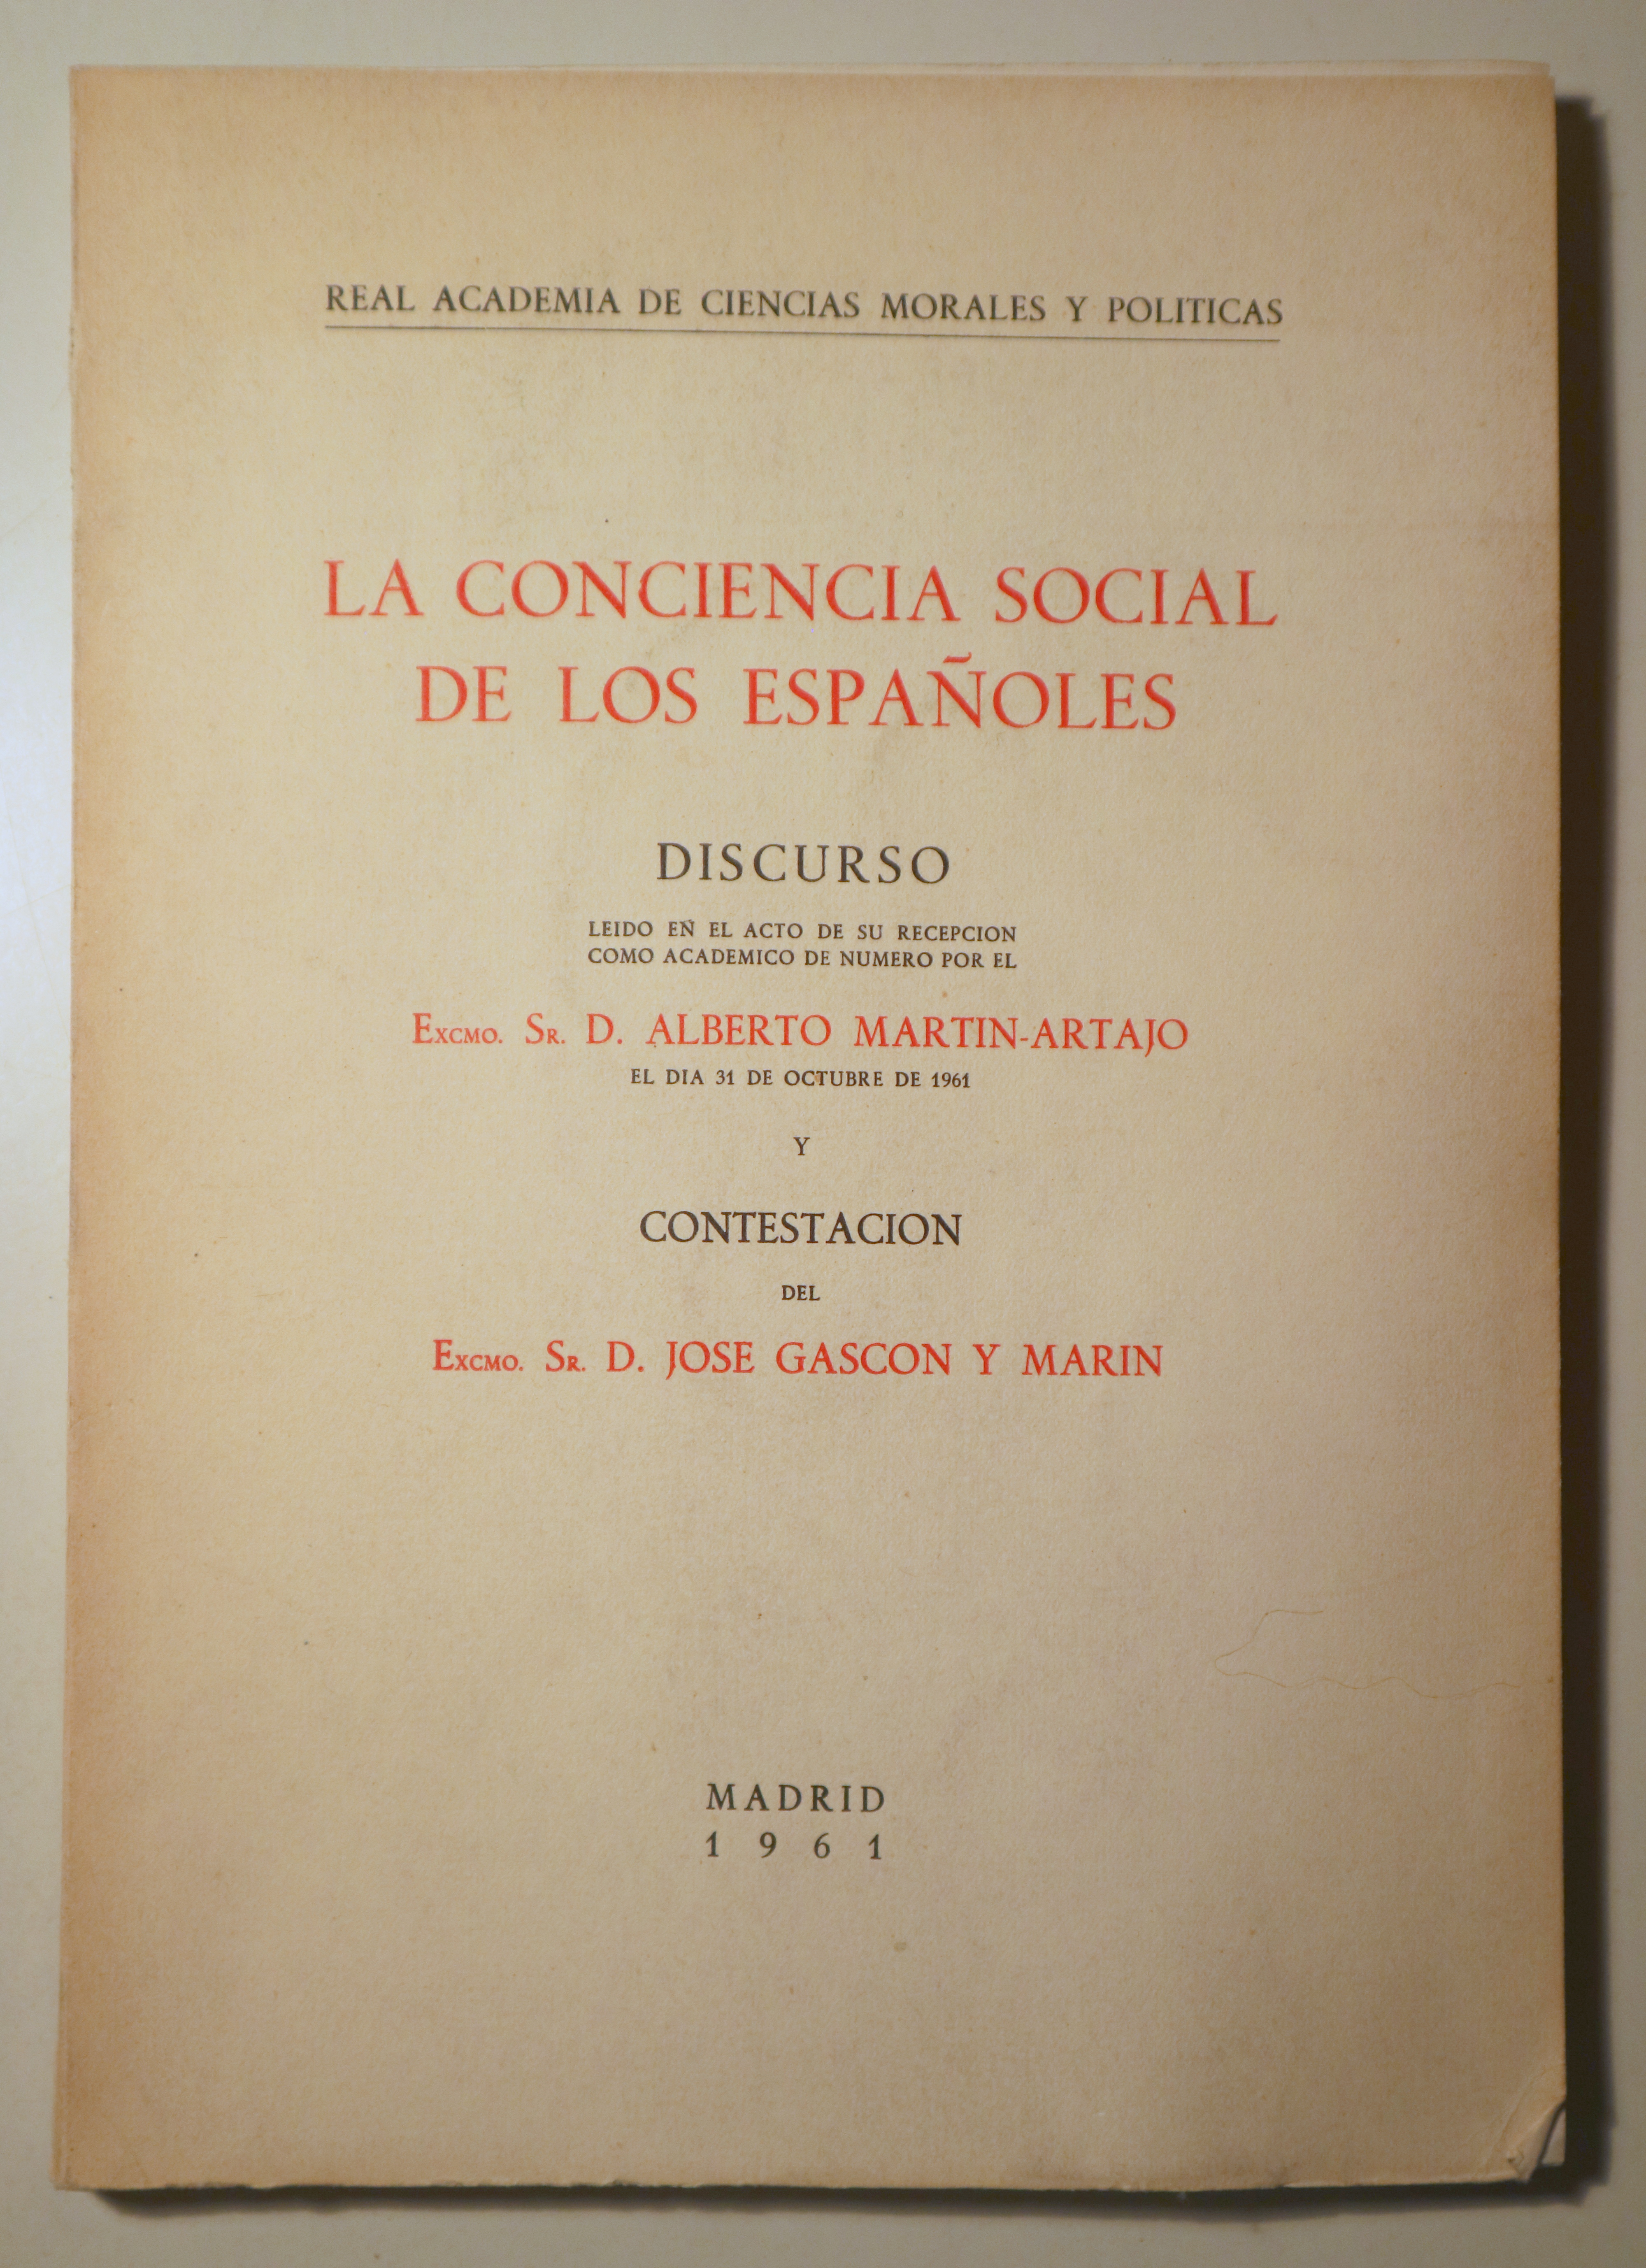 LA CONCIENCIA SOCIAL DE LOS ESPAÑOLES. Discurso y contestación - Madrid 1961